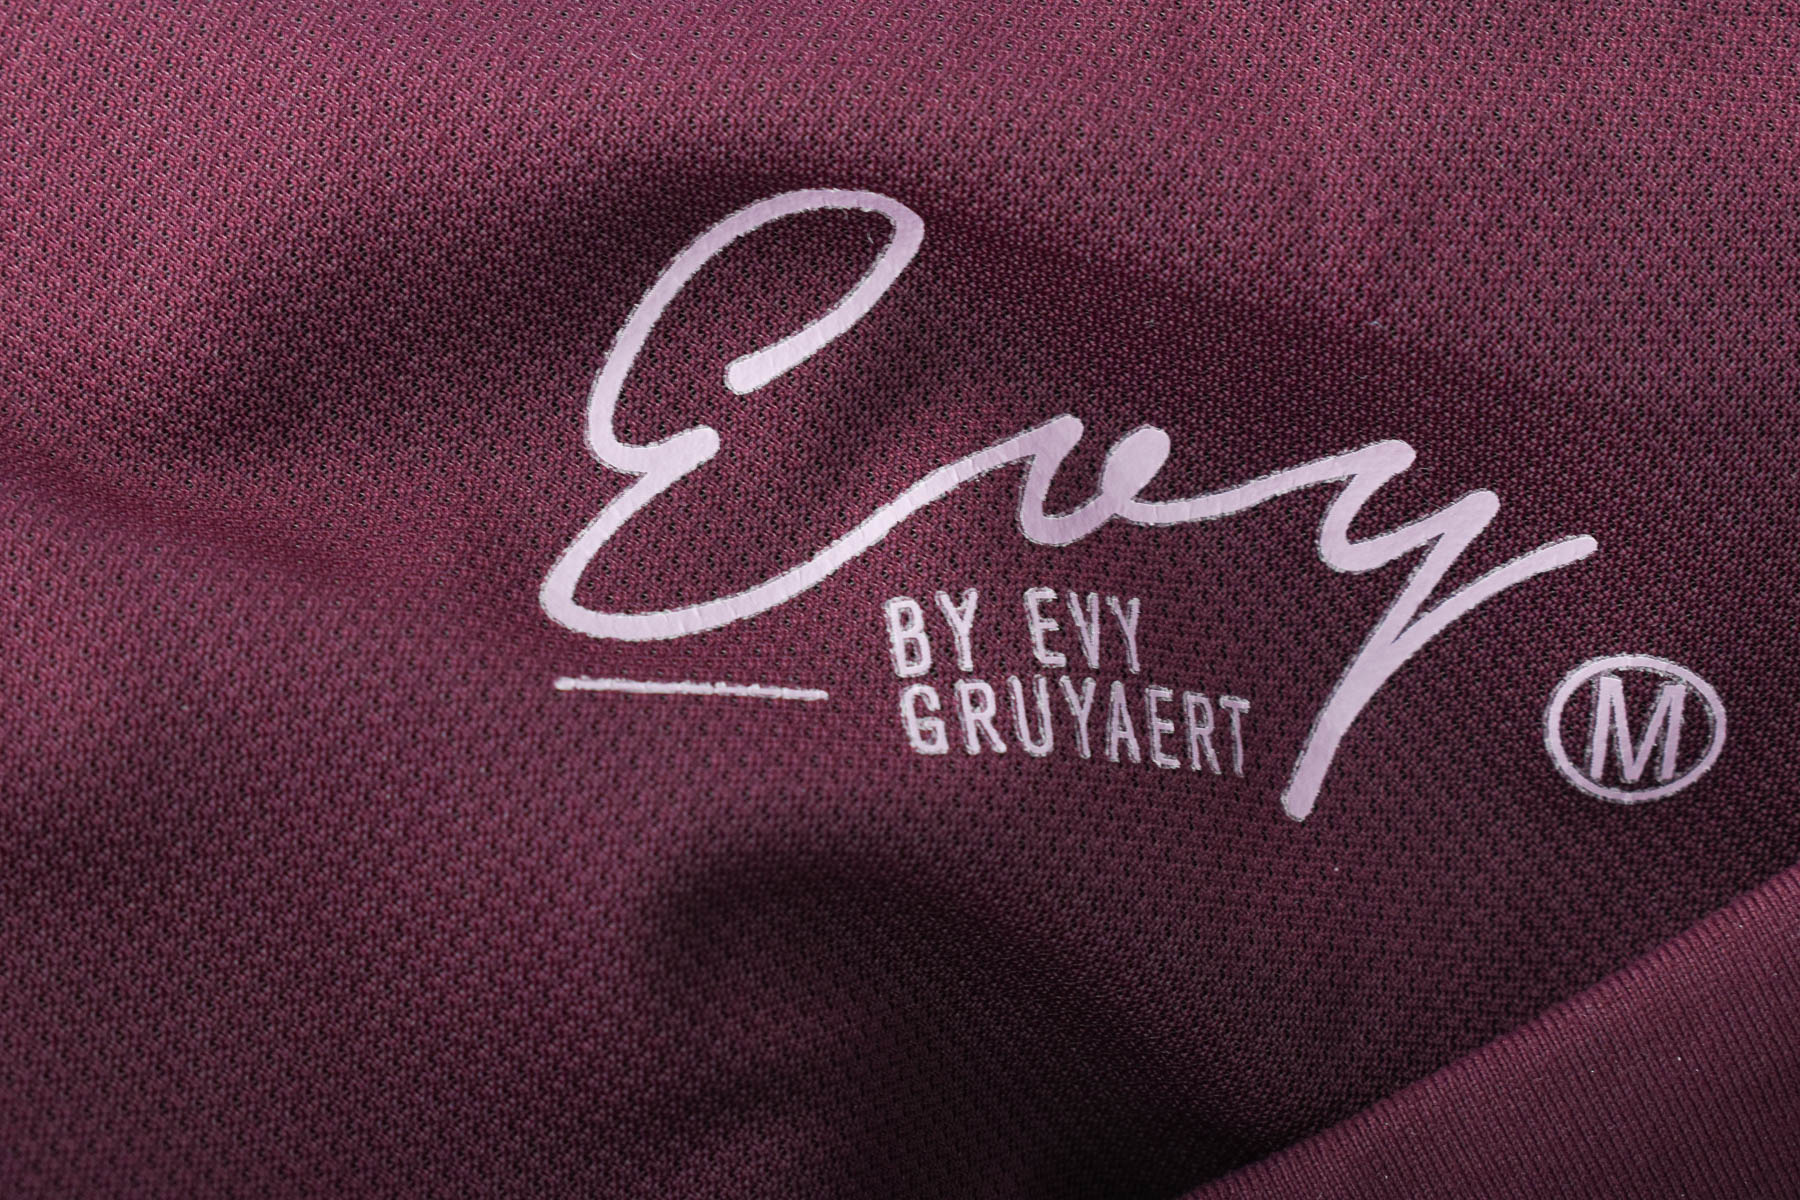 Trening pentru damă - Evy by Evy Gruyaert - 2